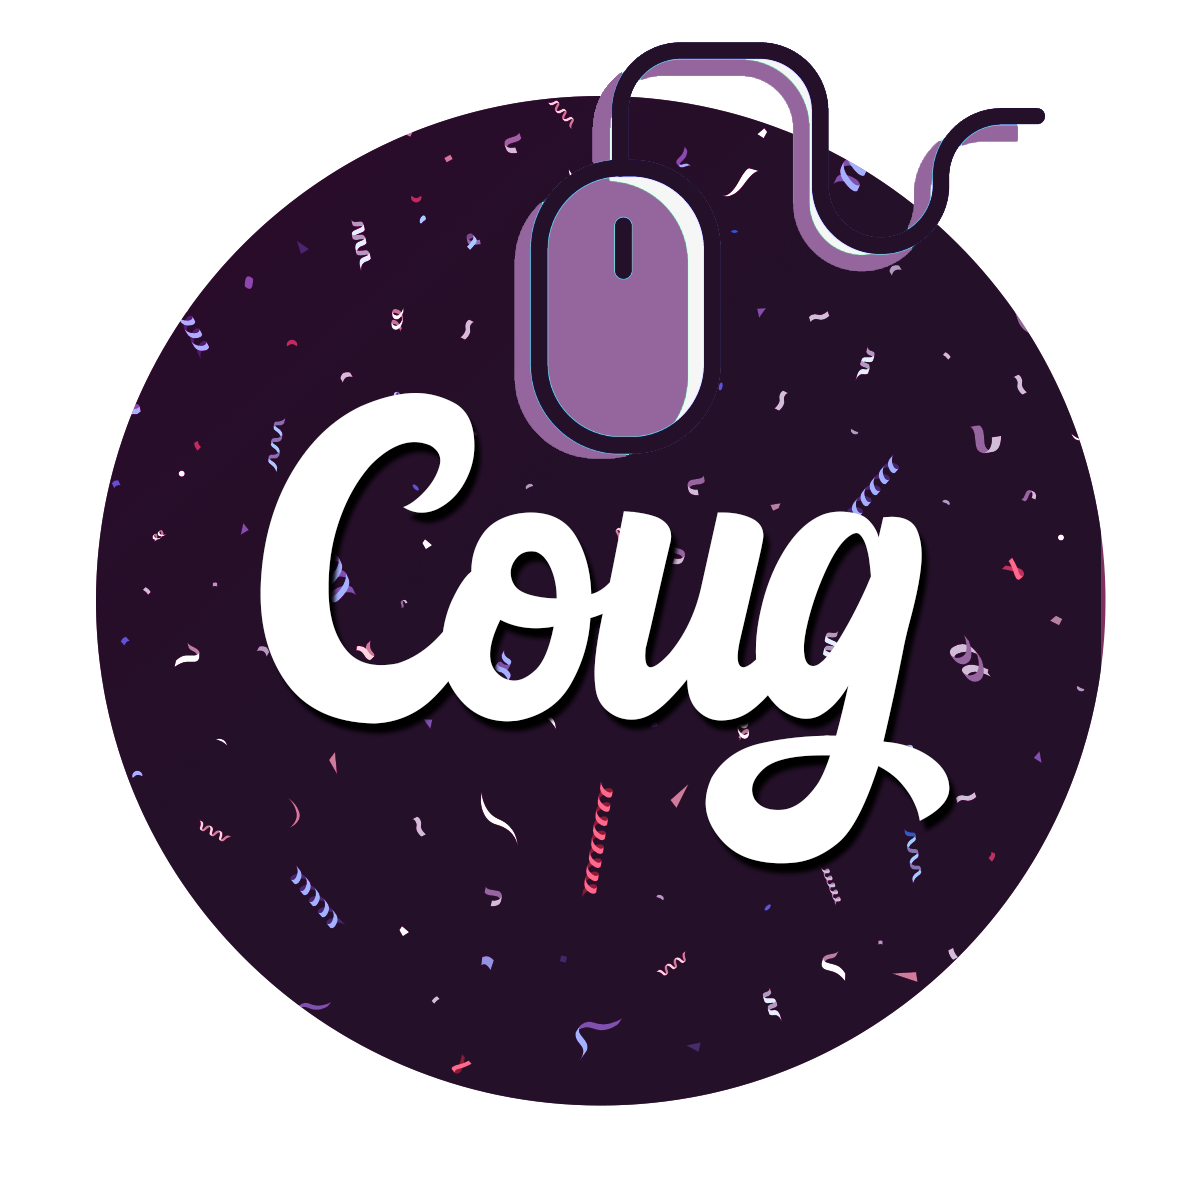 Coug